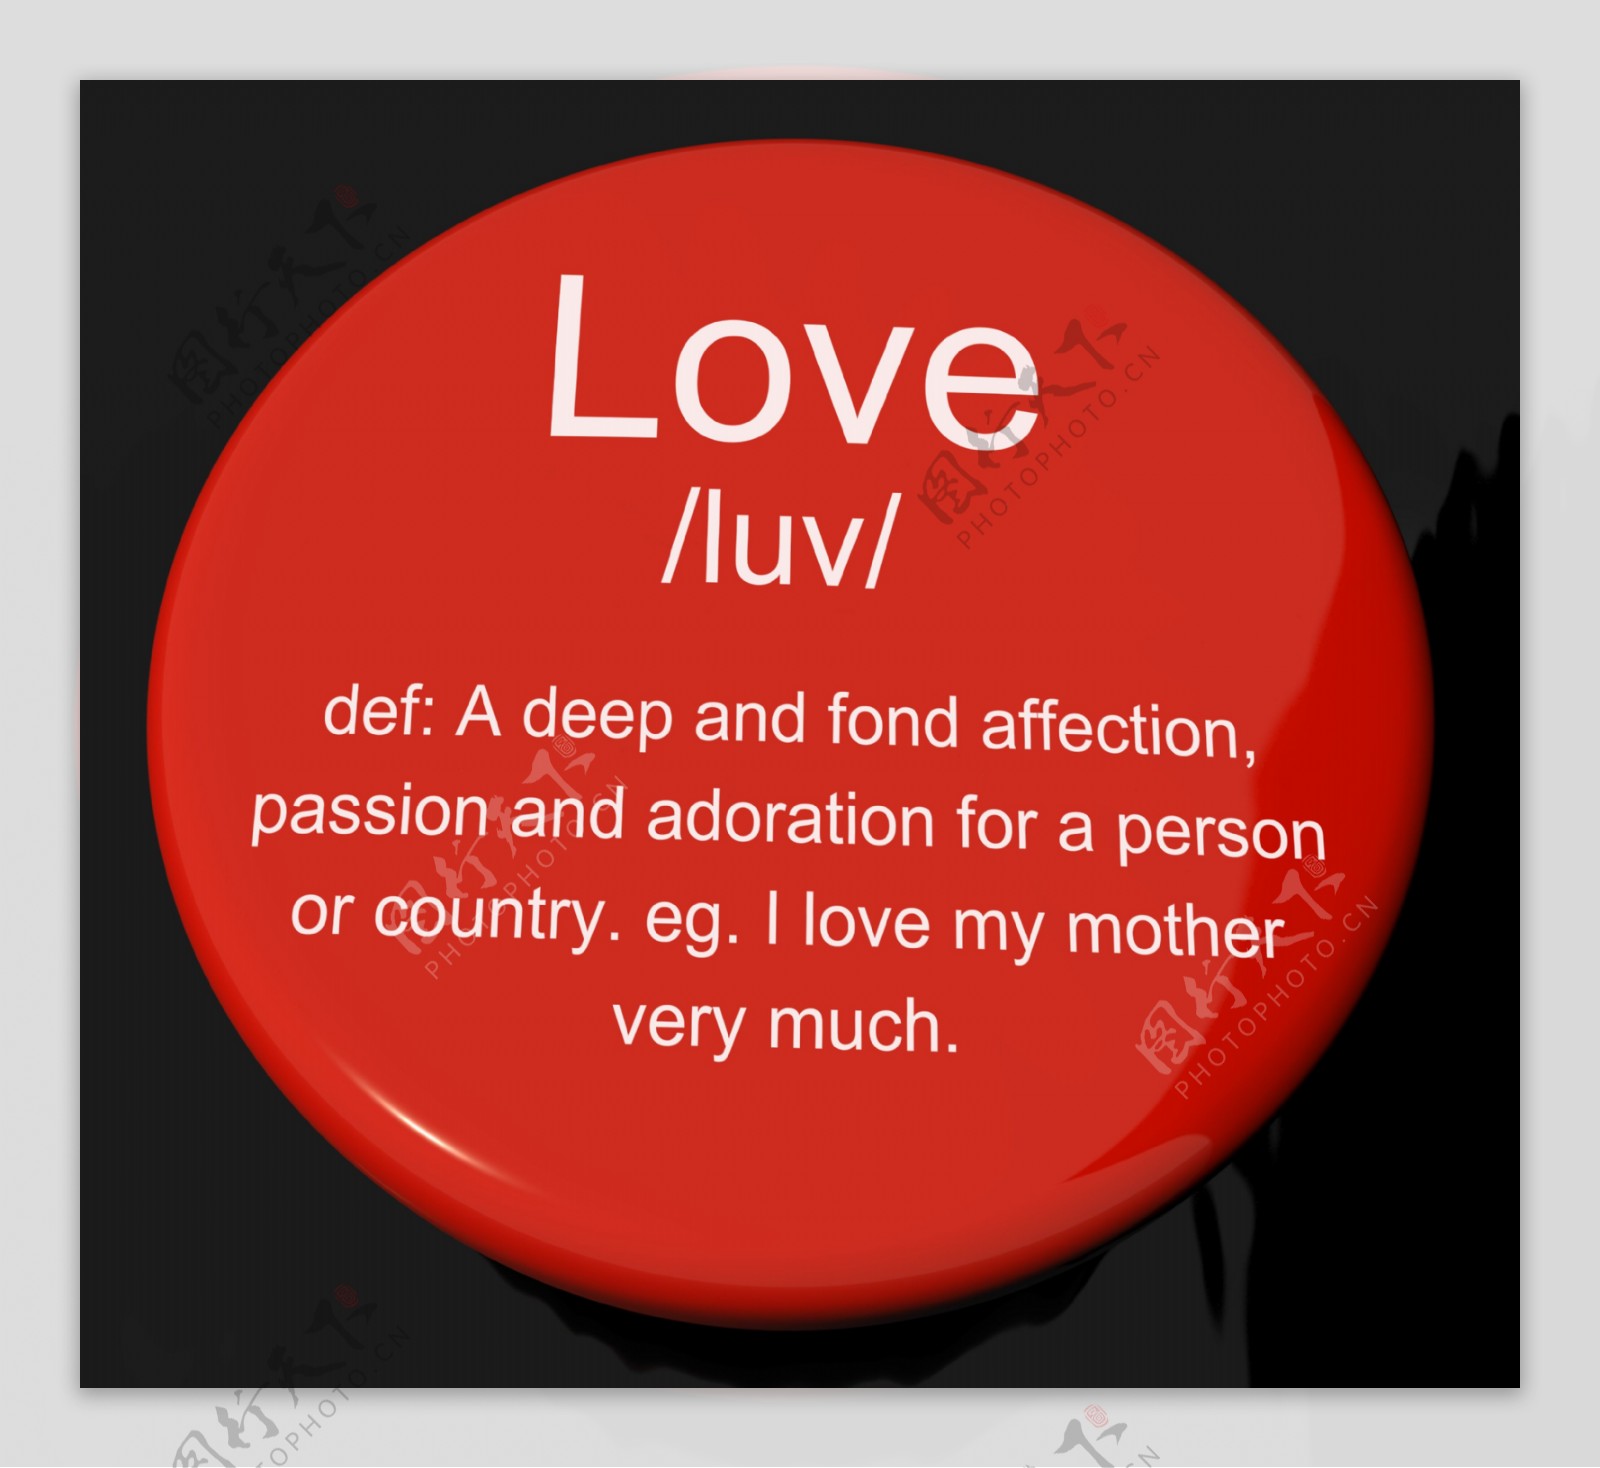 爱情的定义按钮显示爱的情人和感情